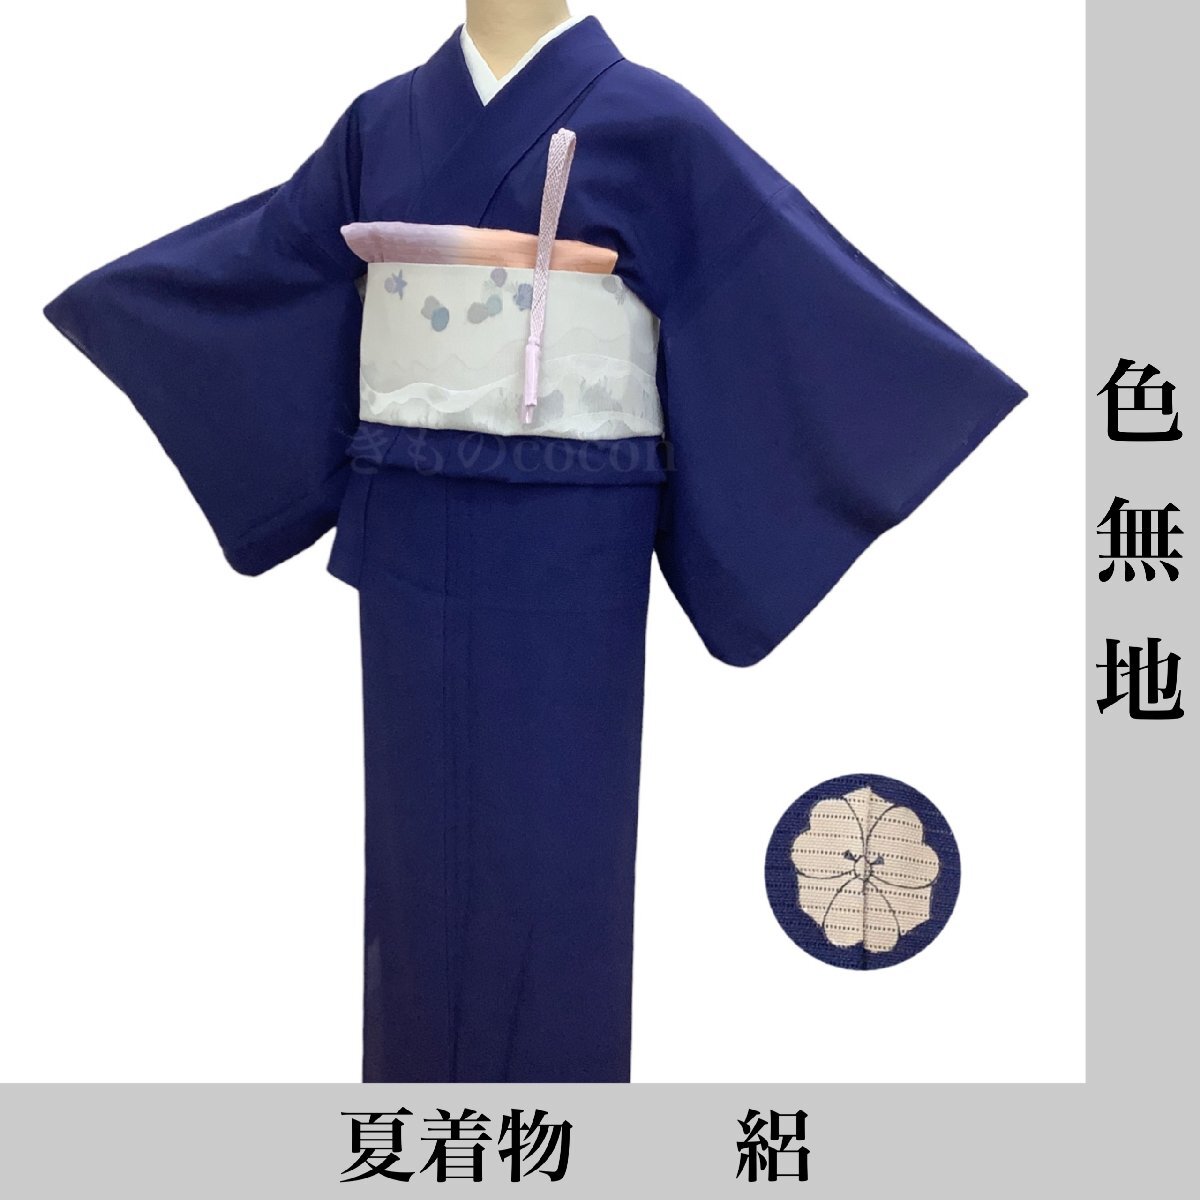  кимоно cocon* однотонная ткань одиночный . лето кимоно . длина 166.68 натуральный шелк темно-синий серия один tsu. лето предмет obi * мелкие вещи продается отдельно [4-30-5K-0150-t]